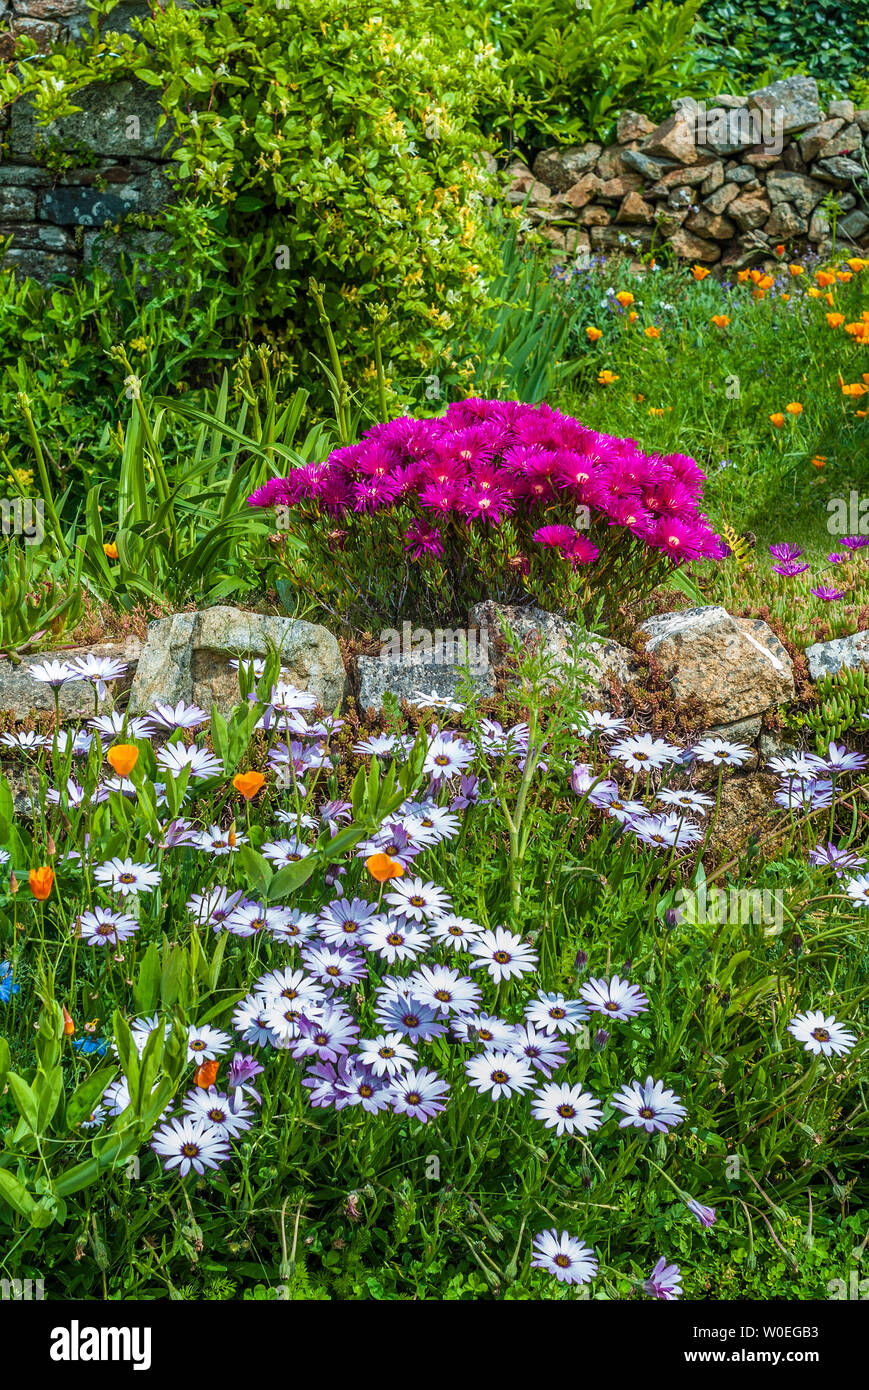 Francia, Bretagna Nevez, "Pays des pierres debout" (terra di pietre permanente), giardino fiorito nel villaggio Kercanic Foto Stock